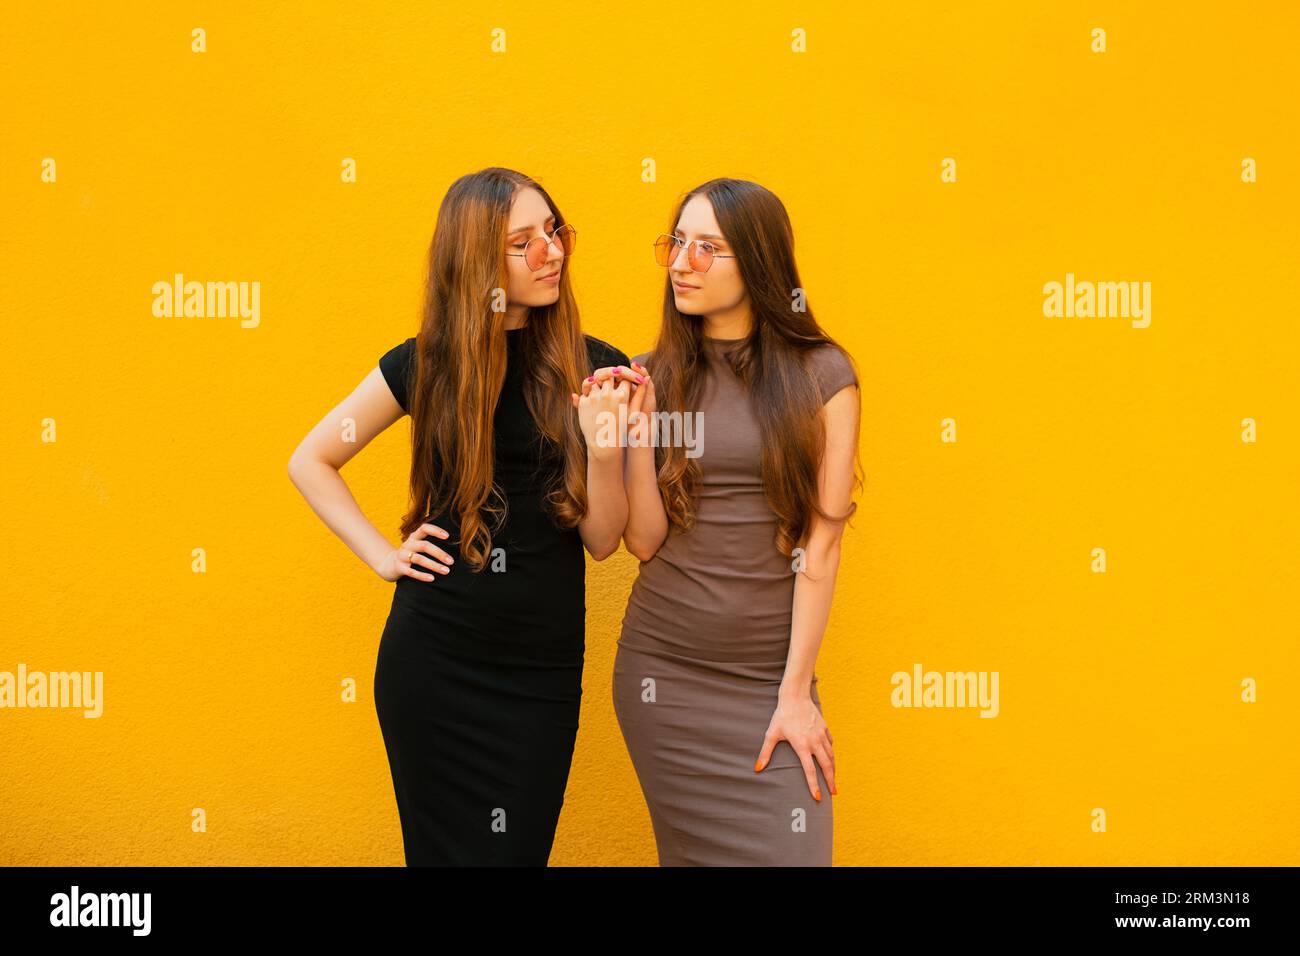 Connexion entre drôle deux jeunes soeurs jumelles génération Z avec des lunettes de soleil fraîches tenant les mains regardant la caméra debout sur fond de mur jaune Banque D'Images